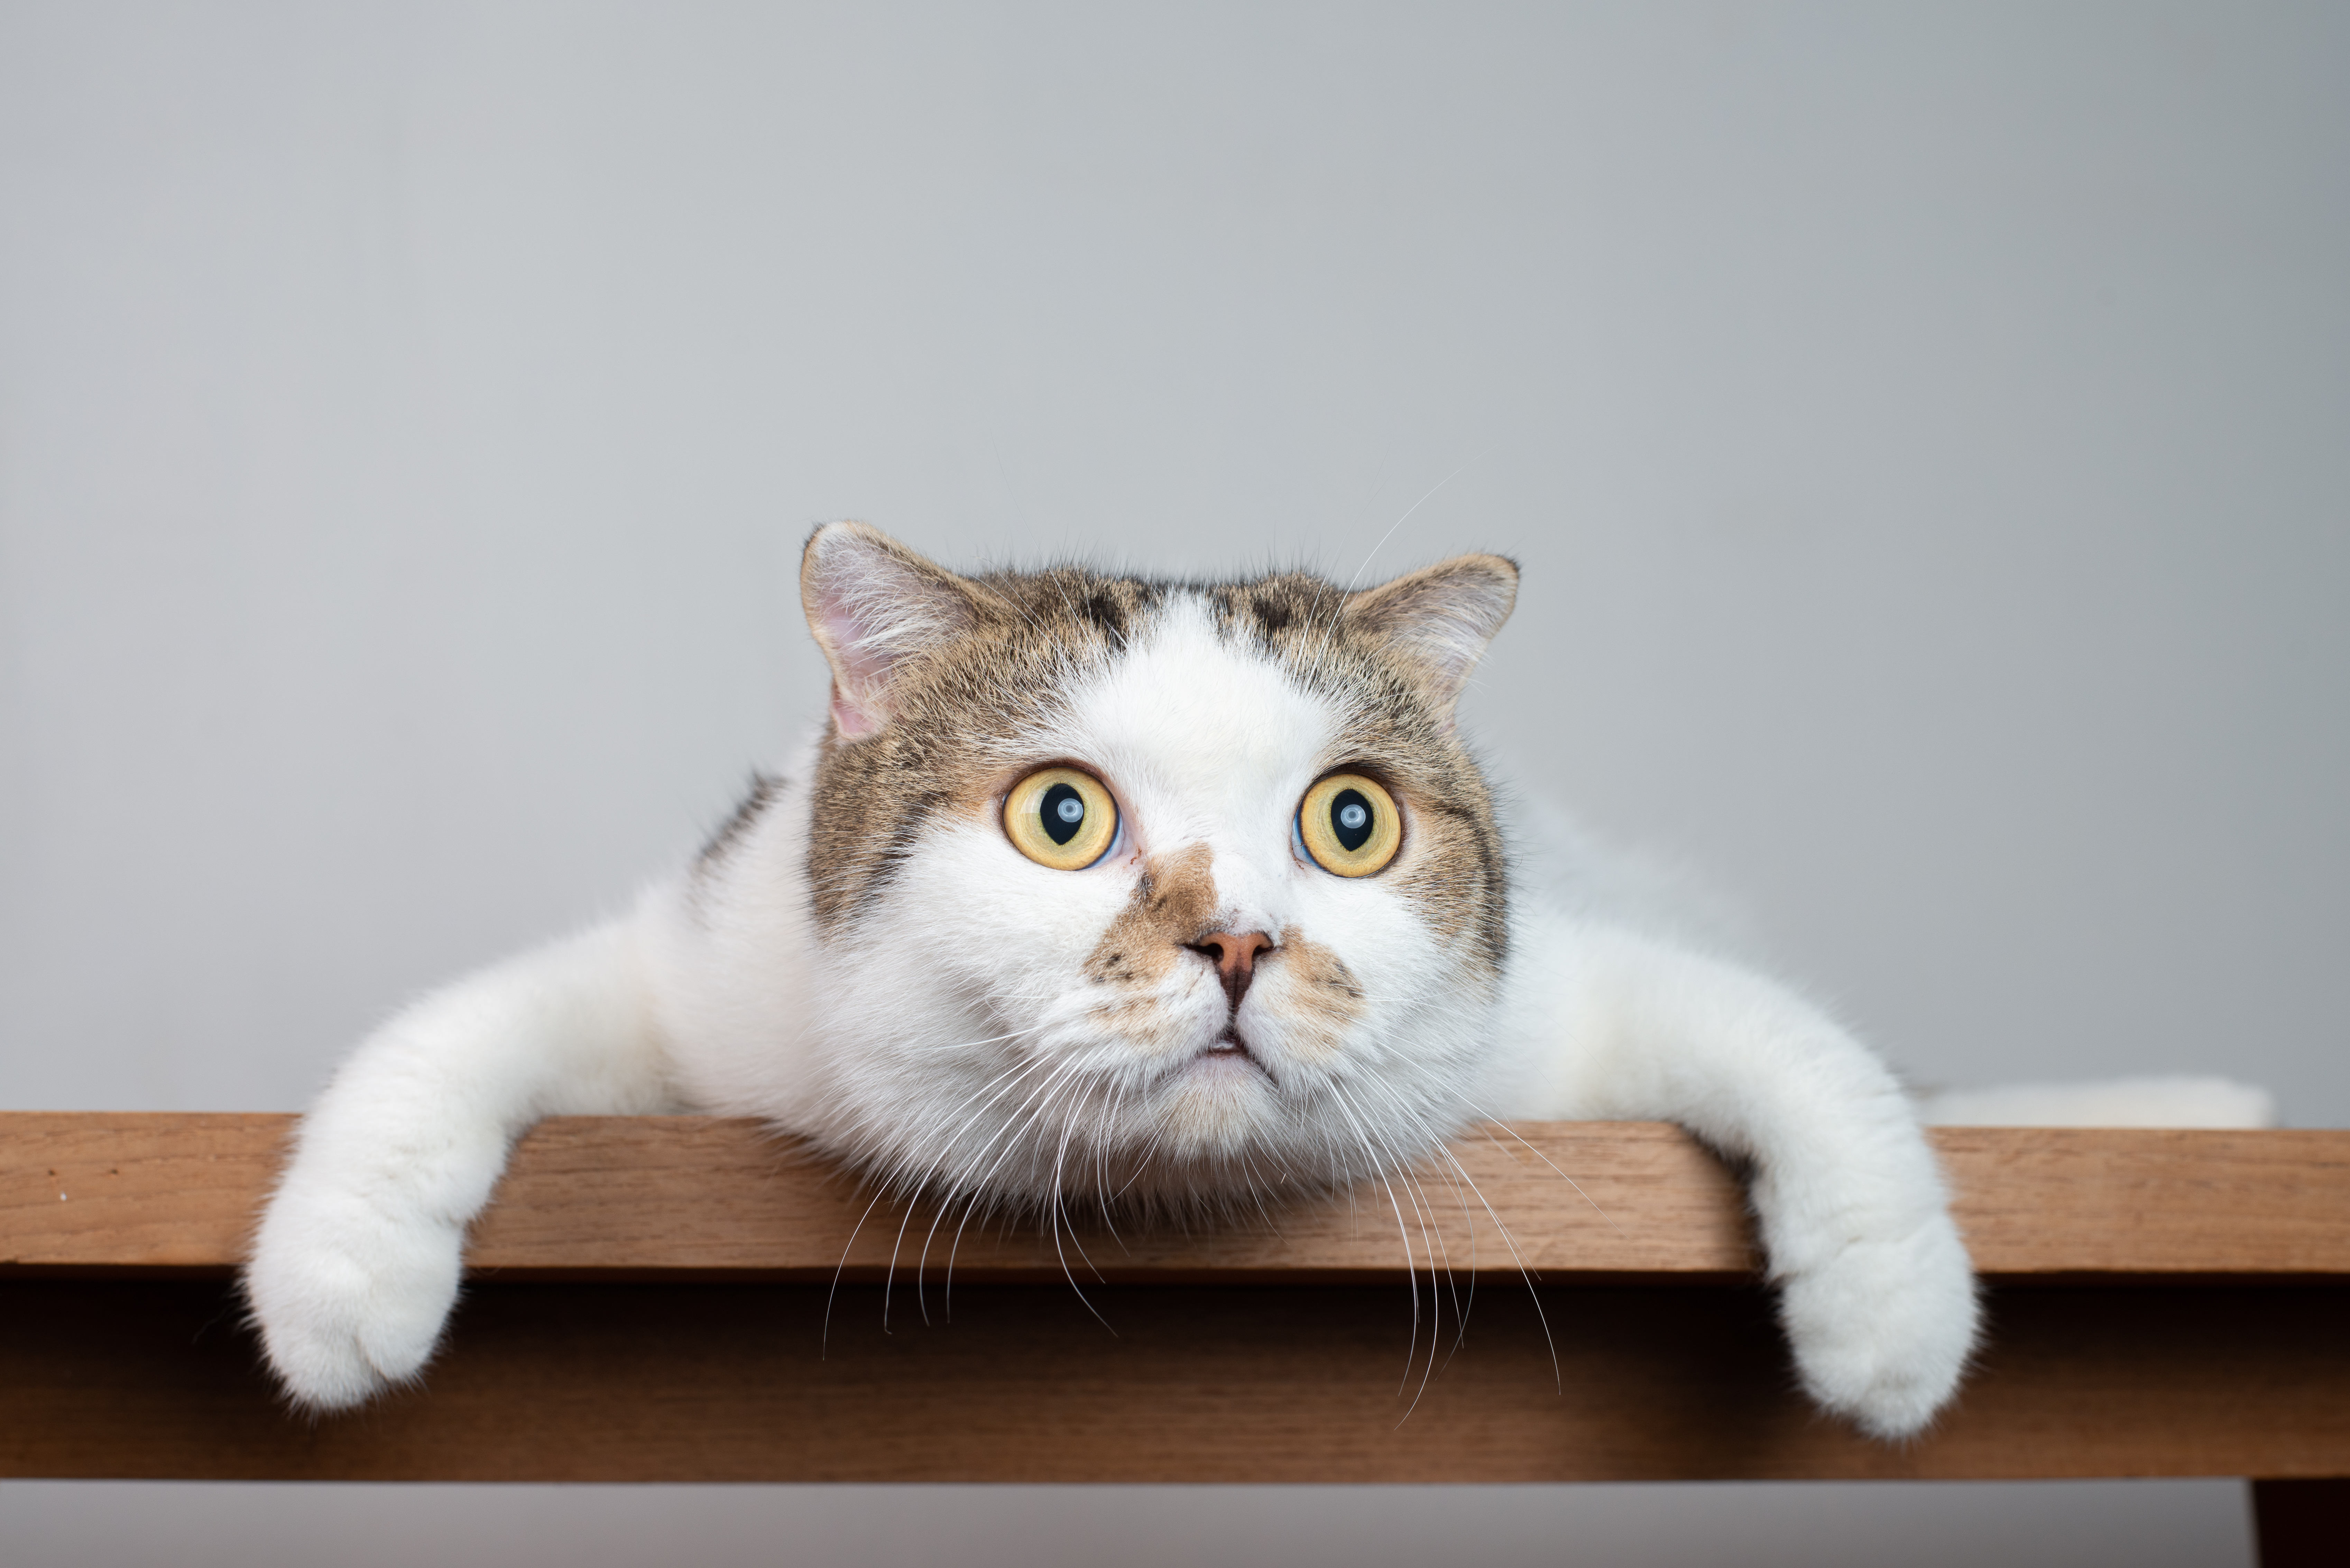 Охотятся и привлекают внимание: почему коты так любят сбрасывать предметы со стола